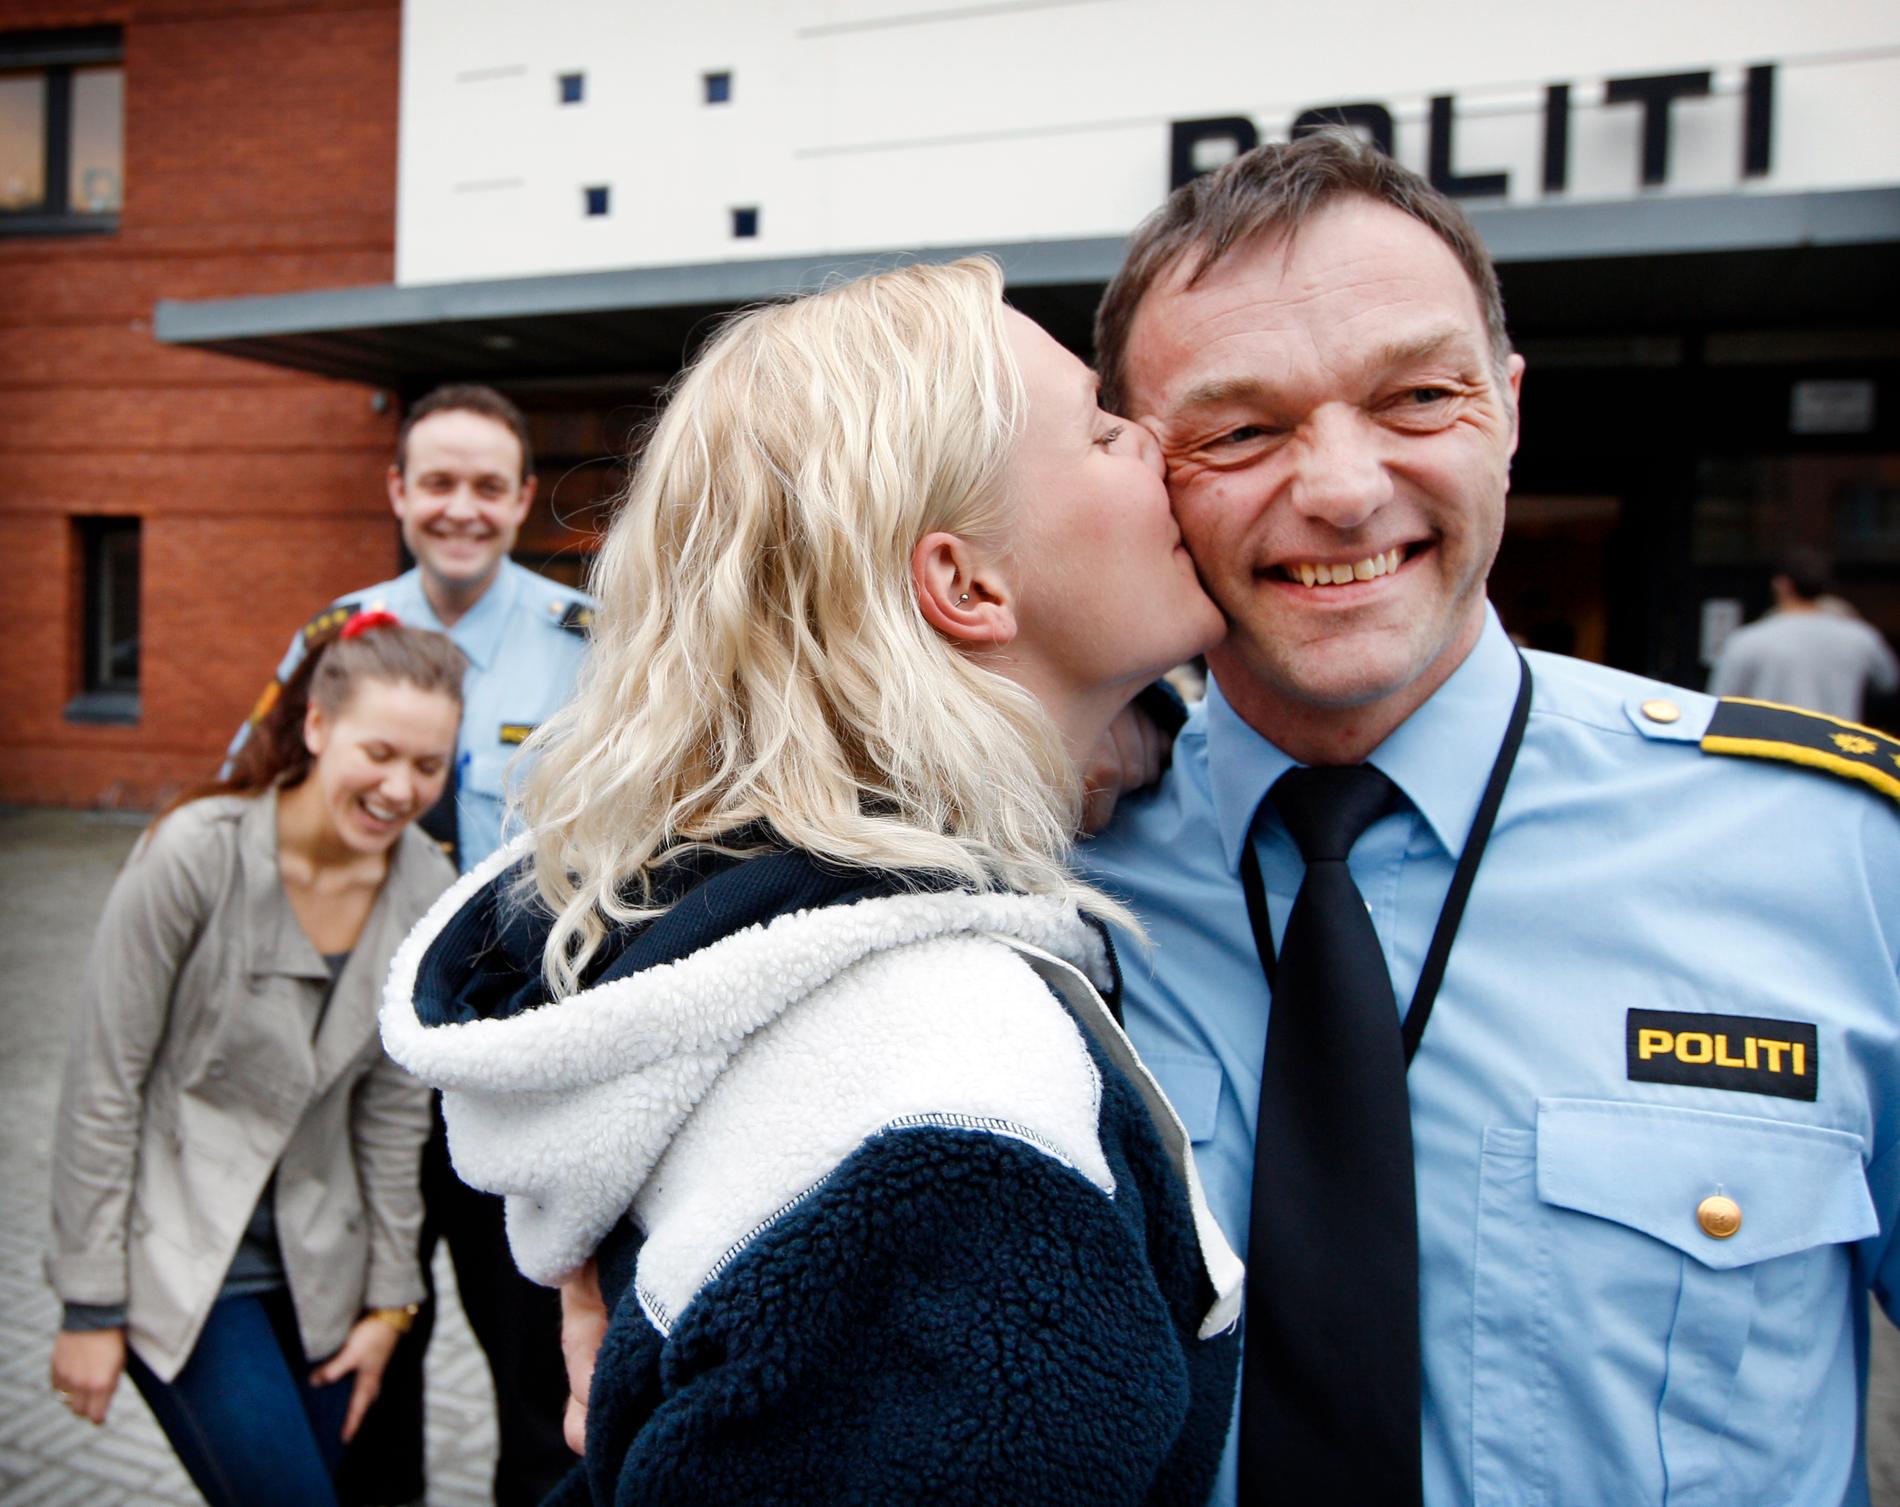  President ved Hetland videregående skole i 2012, Frida Toftedal, gav et kyss til Kristian Johansen, leder for ordensseksjonen i politiet. Dette i forbindelse med samarbeidsmøte mellom russ og politi i forkant av russefeiringen for fem år siden. 